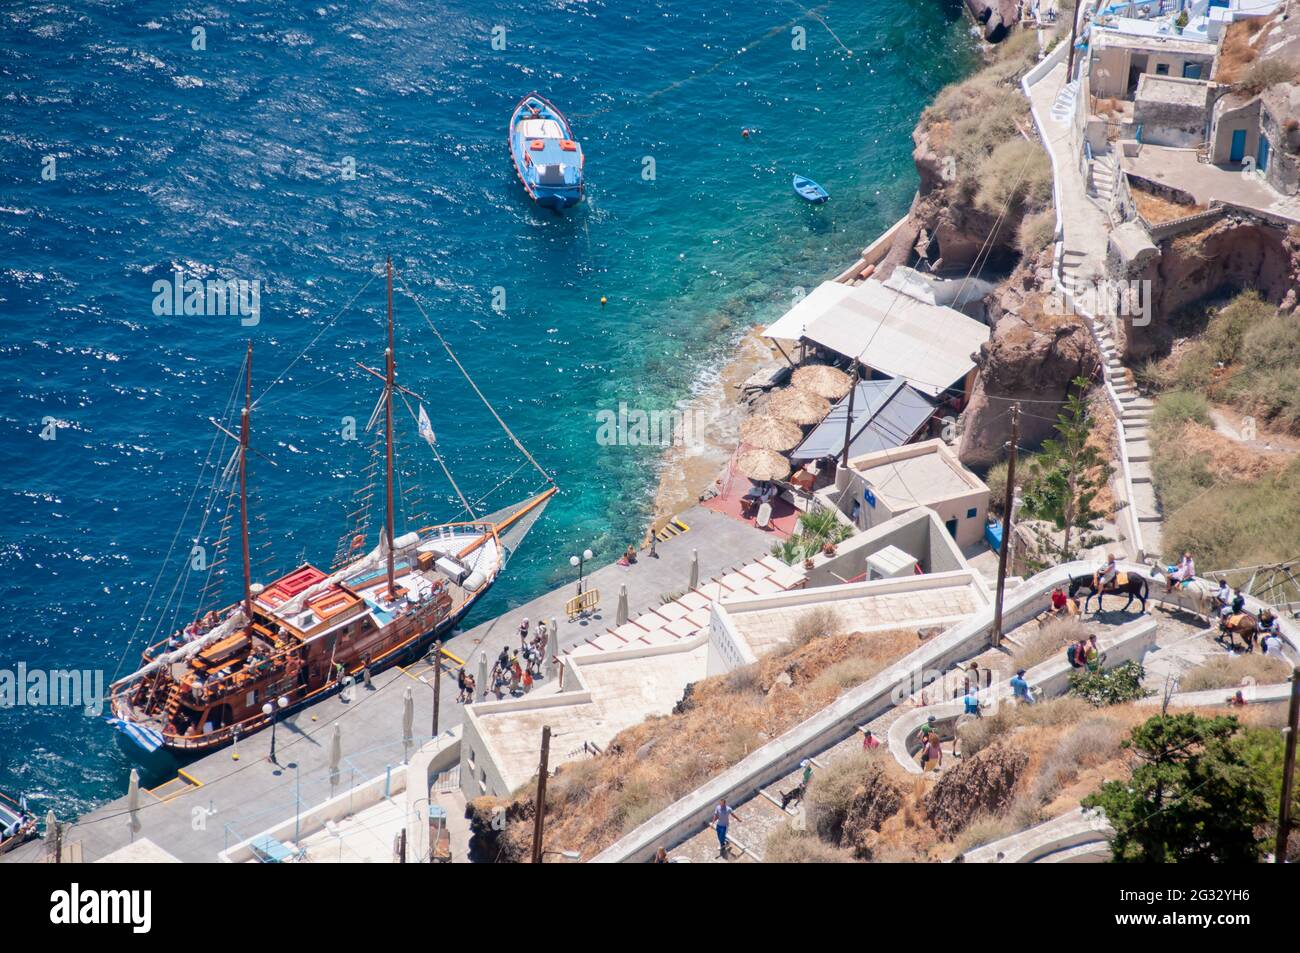 Foto aerea di una crociera greca gulet al vecchio porto sull'isola di Santorini in Grecia. Sullo sfondo gli edifici del porto Foto Stock